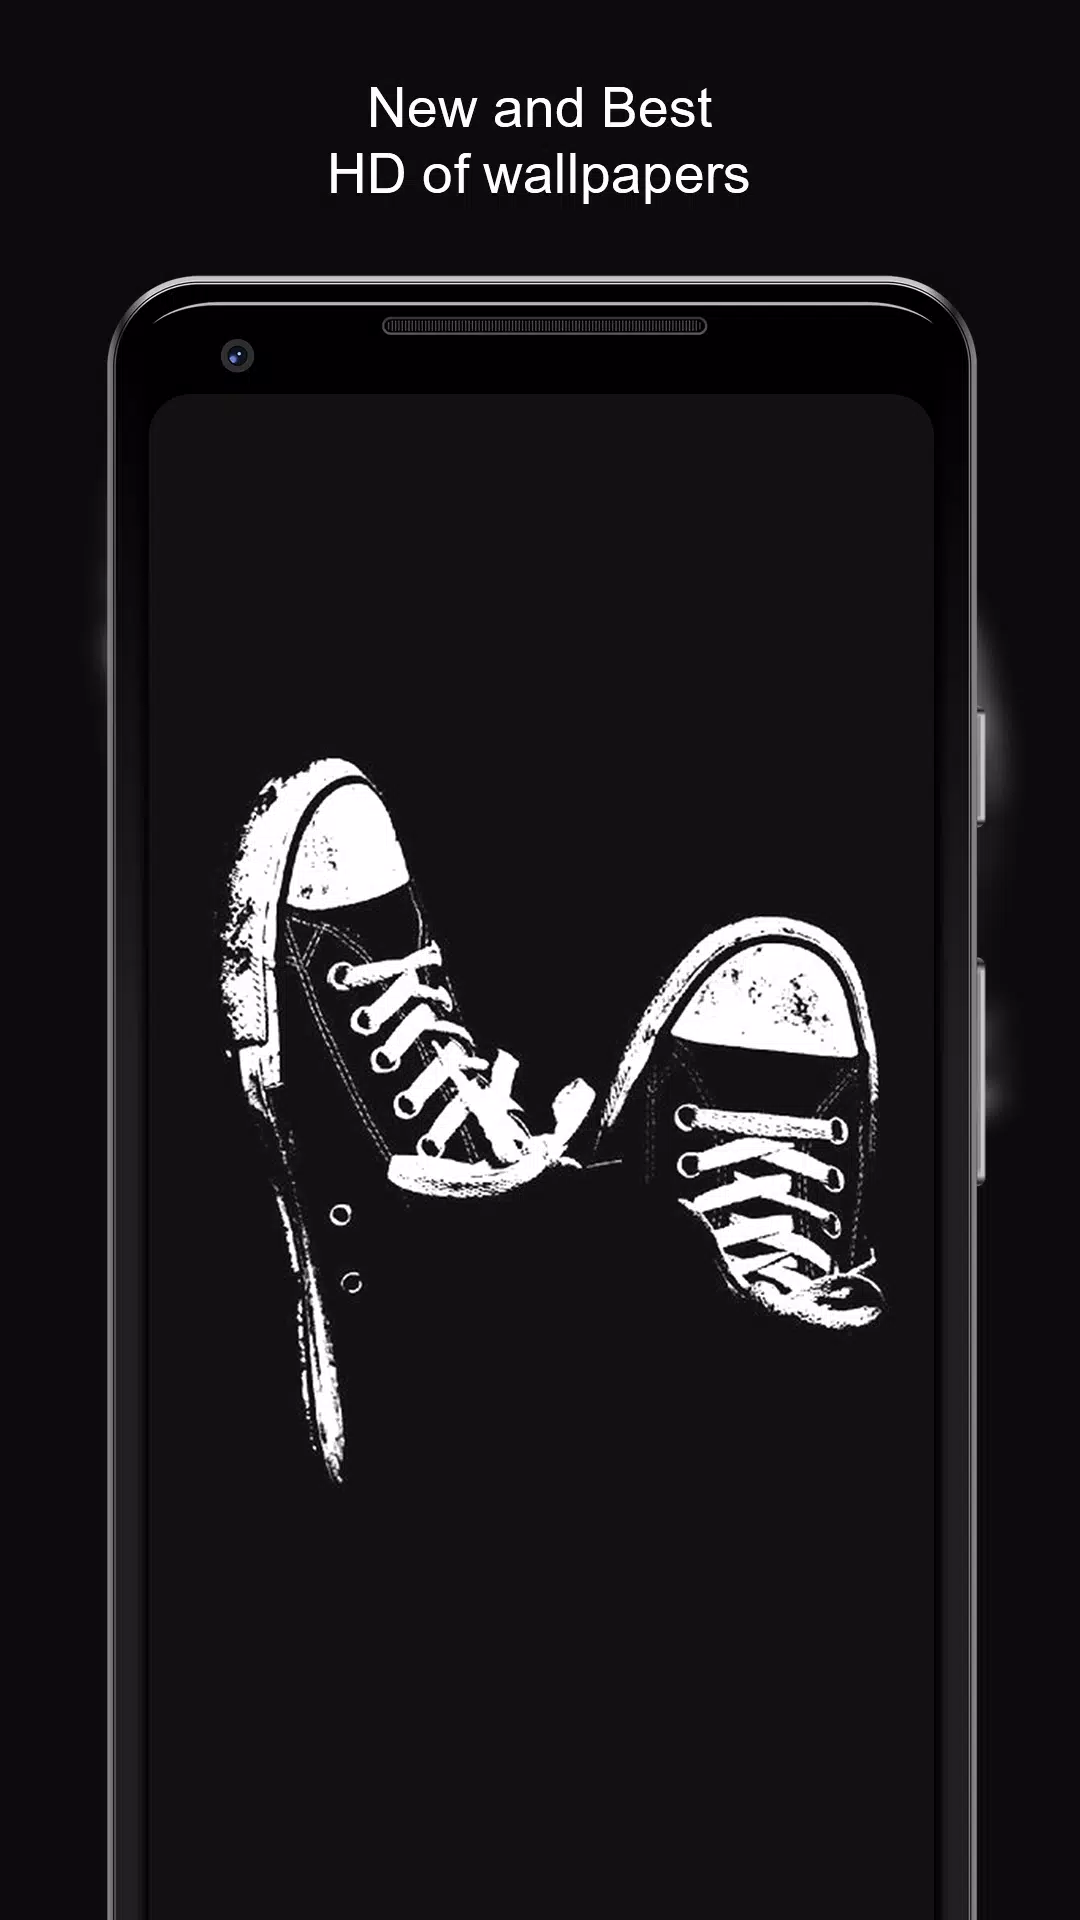 Tải xuống ảnh nền mỹ thuật đen - Black Art Wallpaper HD APK Nếu bạn đang tìm kiếm một ứng dụng bắt mắt để cải thiện màn hình điện thoại của mình, hãy thử ứng dụng ảnh nền mỹ thuật đen. Với chất lượng độ phân giải cao và những hình ảnh nghệ thuật đặc sắc, bạn sẽ khám phá được nhiều bản sắc màu sắc riêng tạo nên phong cách độc đáo cho màn hình của mình.